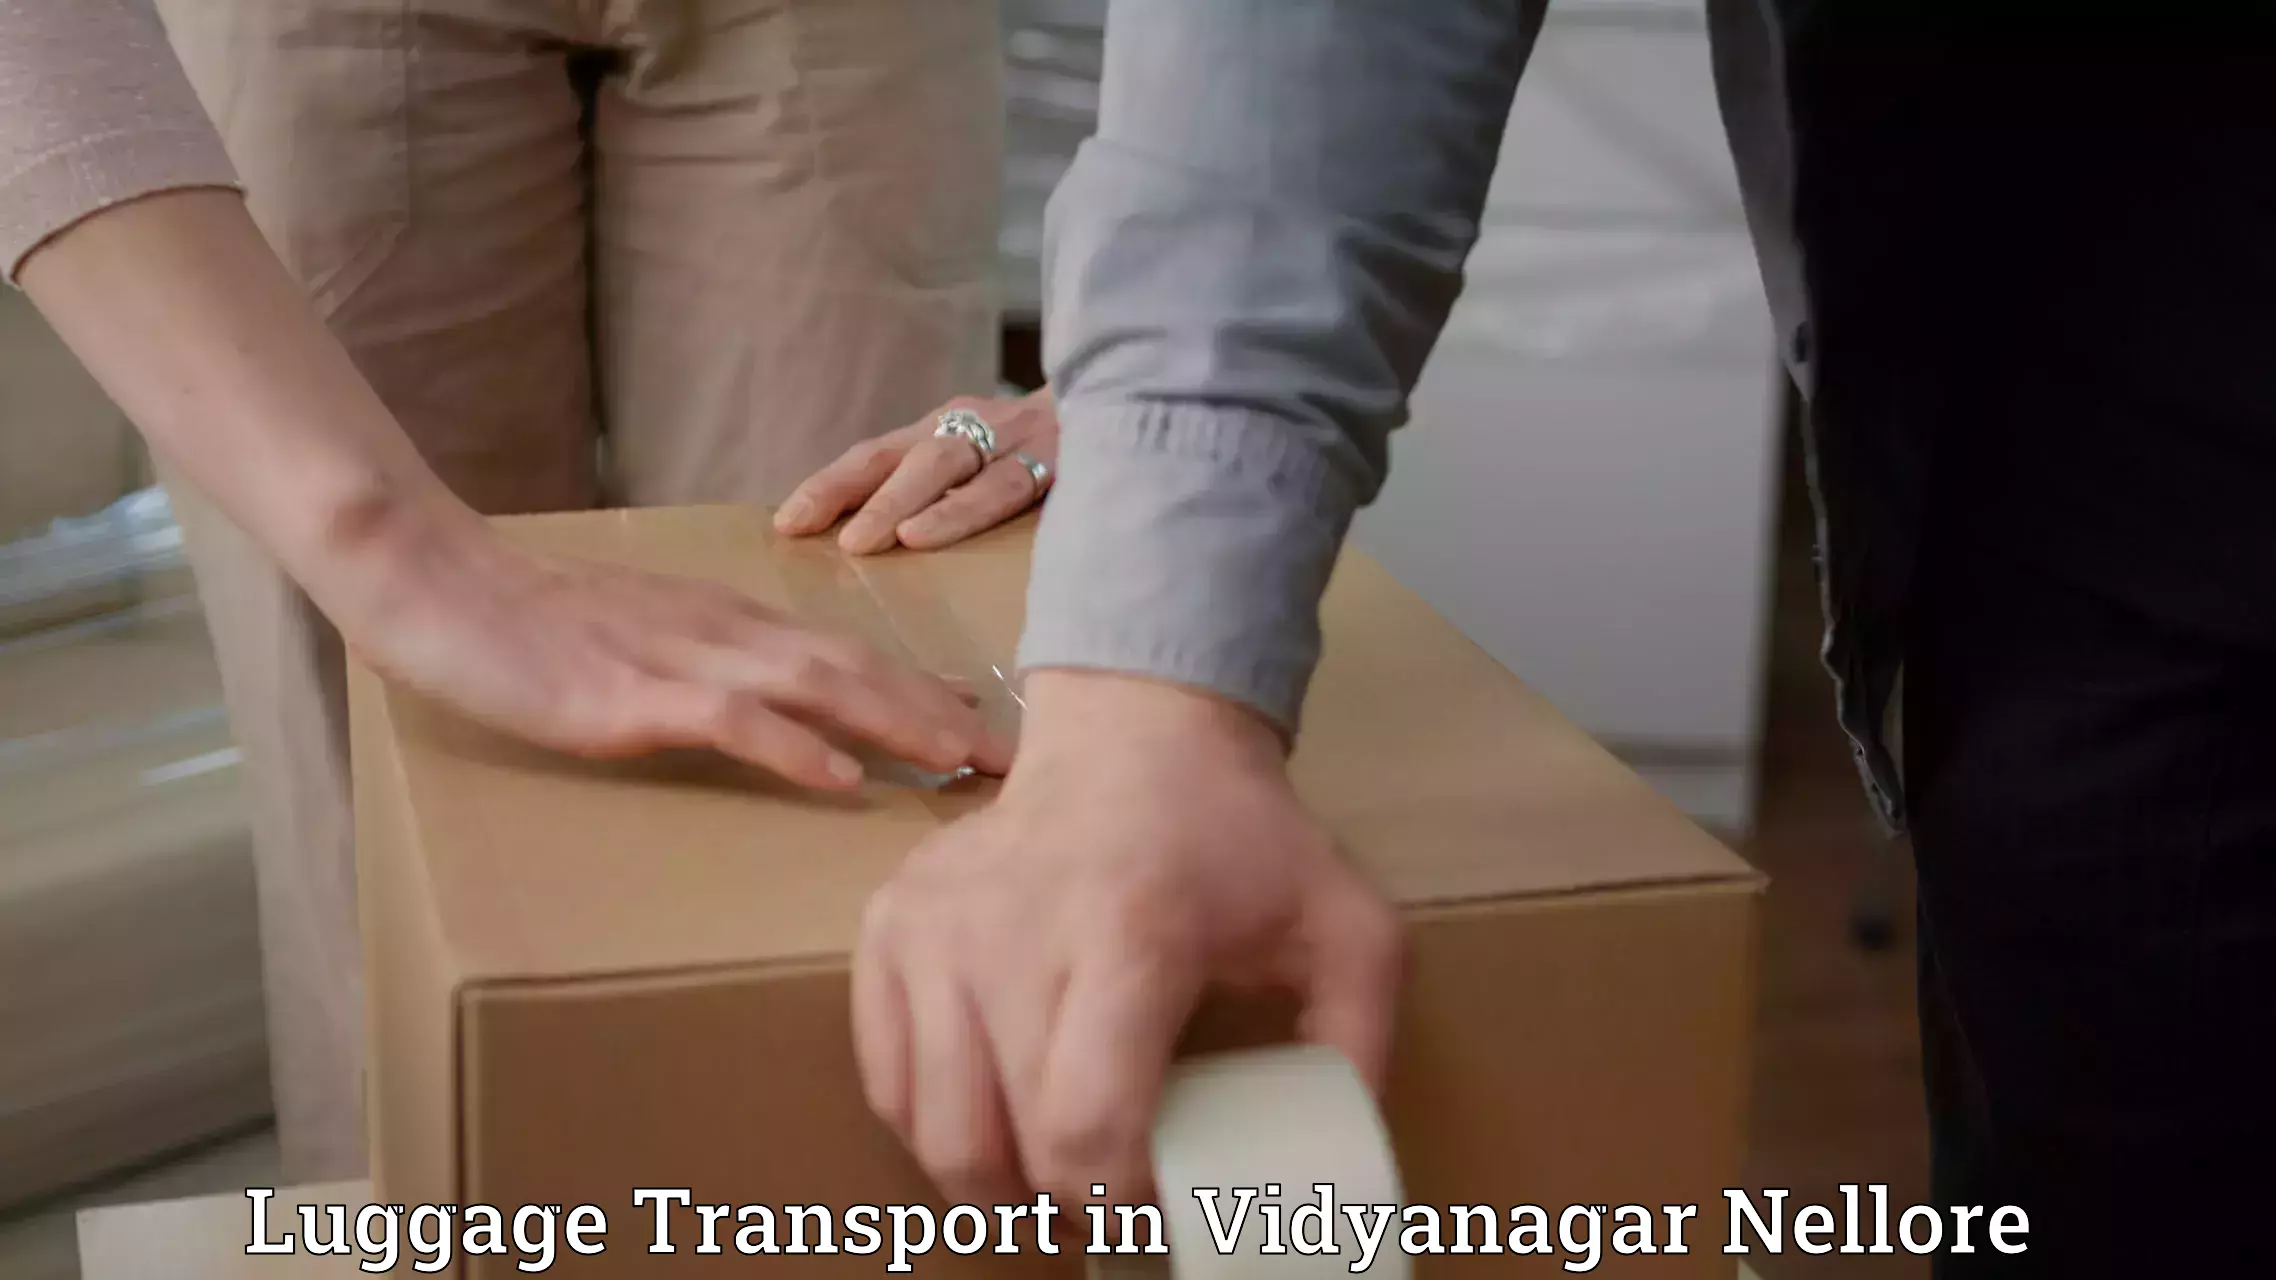 Luggage shipping estimate in Vidyanagar Nellore